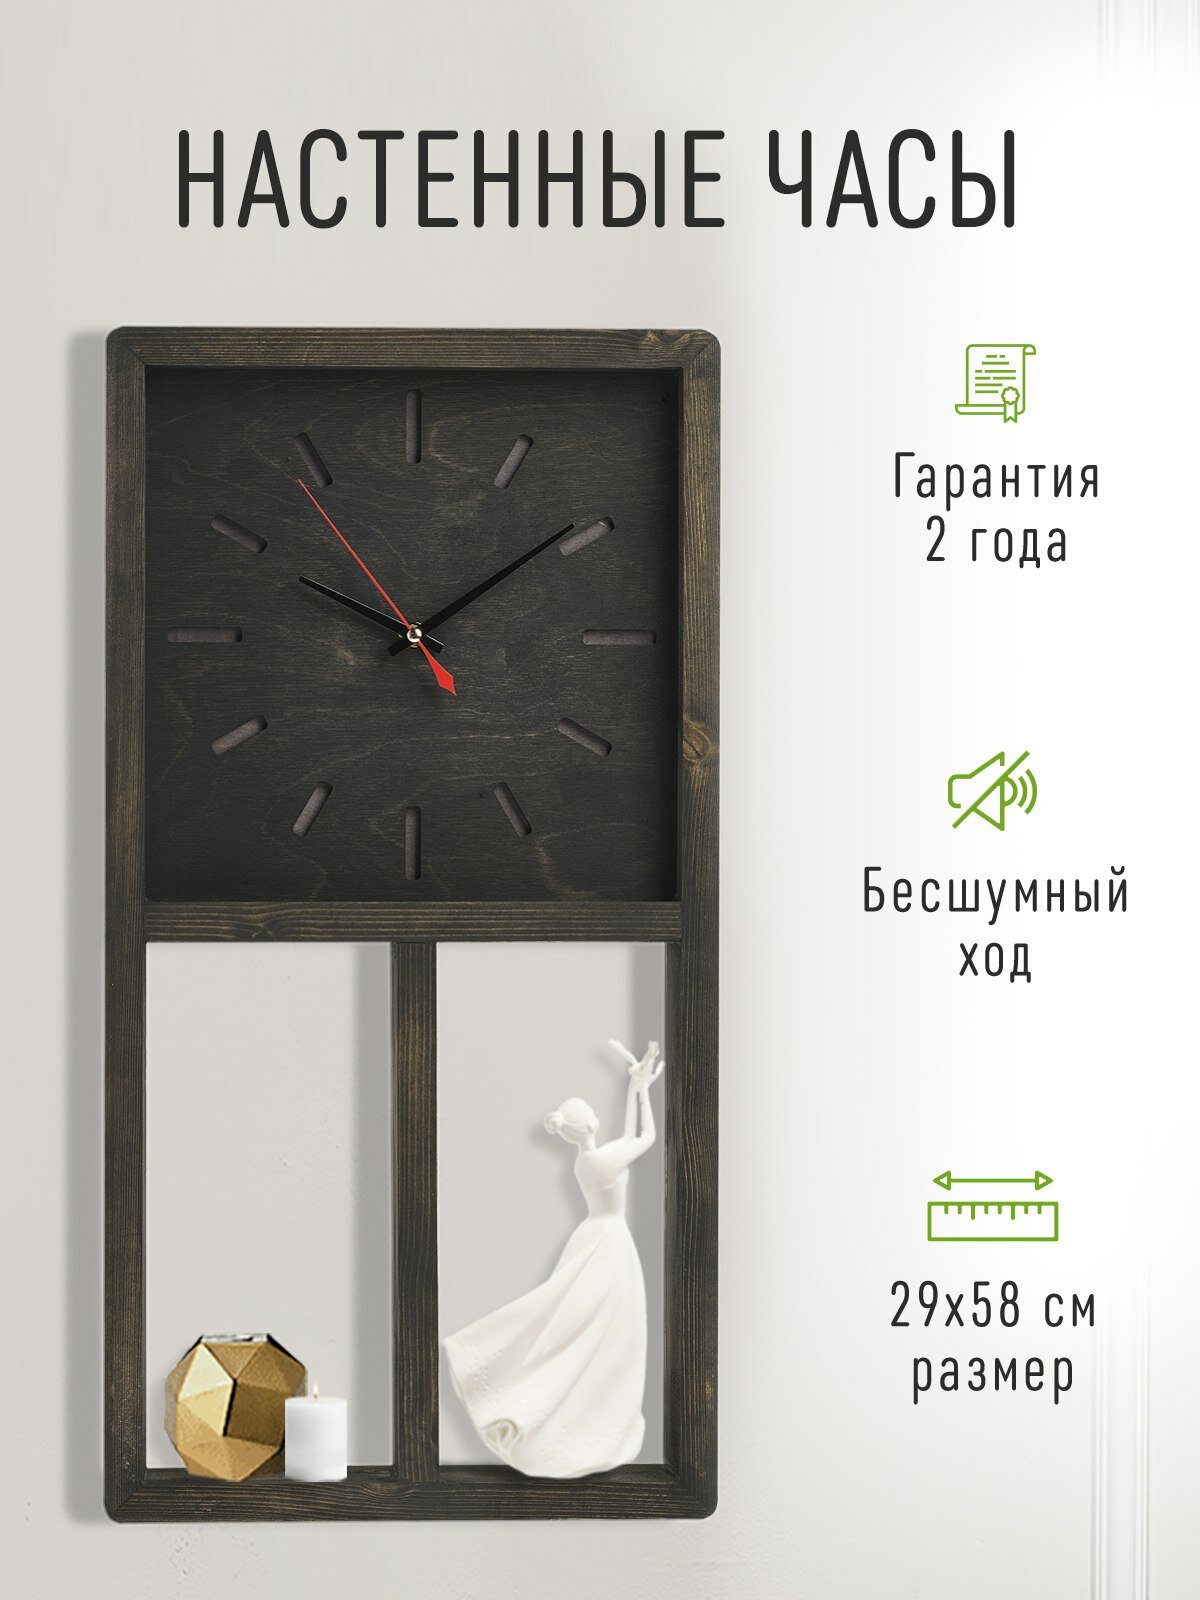 Часы настенные "антара" бесшумные интерьерные деревянные 58 см. Декор лофт для дома. Часы для офиса, кафе, ресторана. Полка настенная с часами.